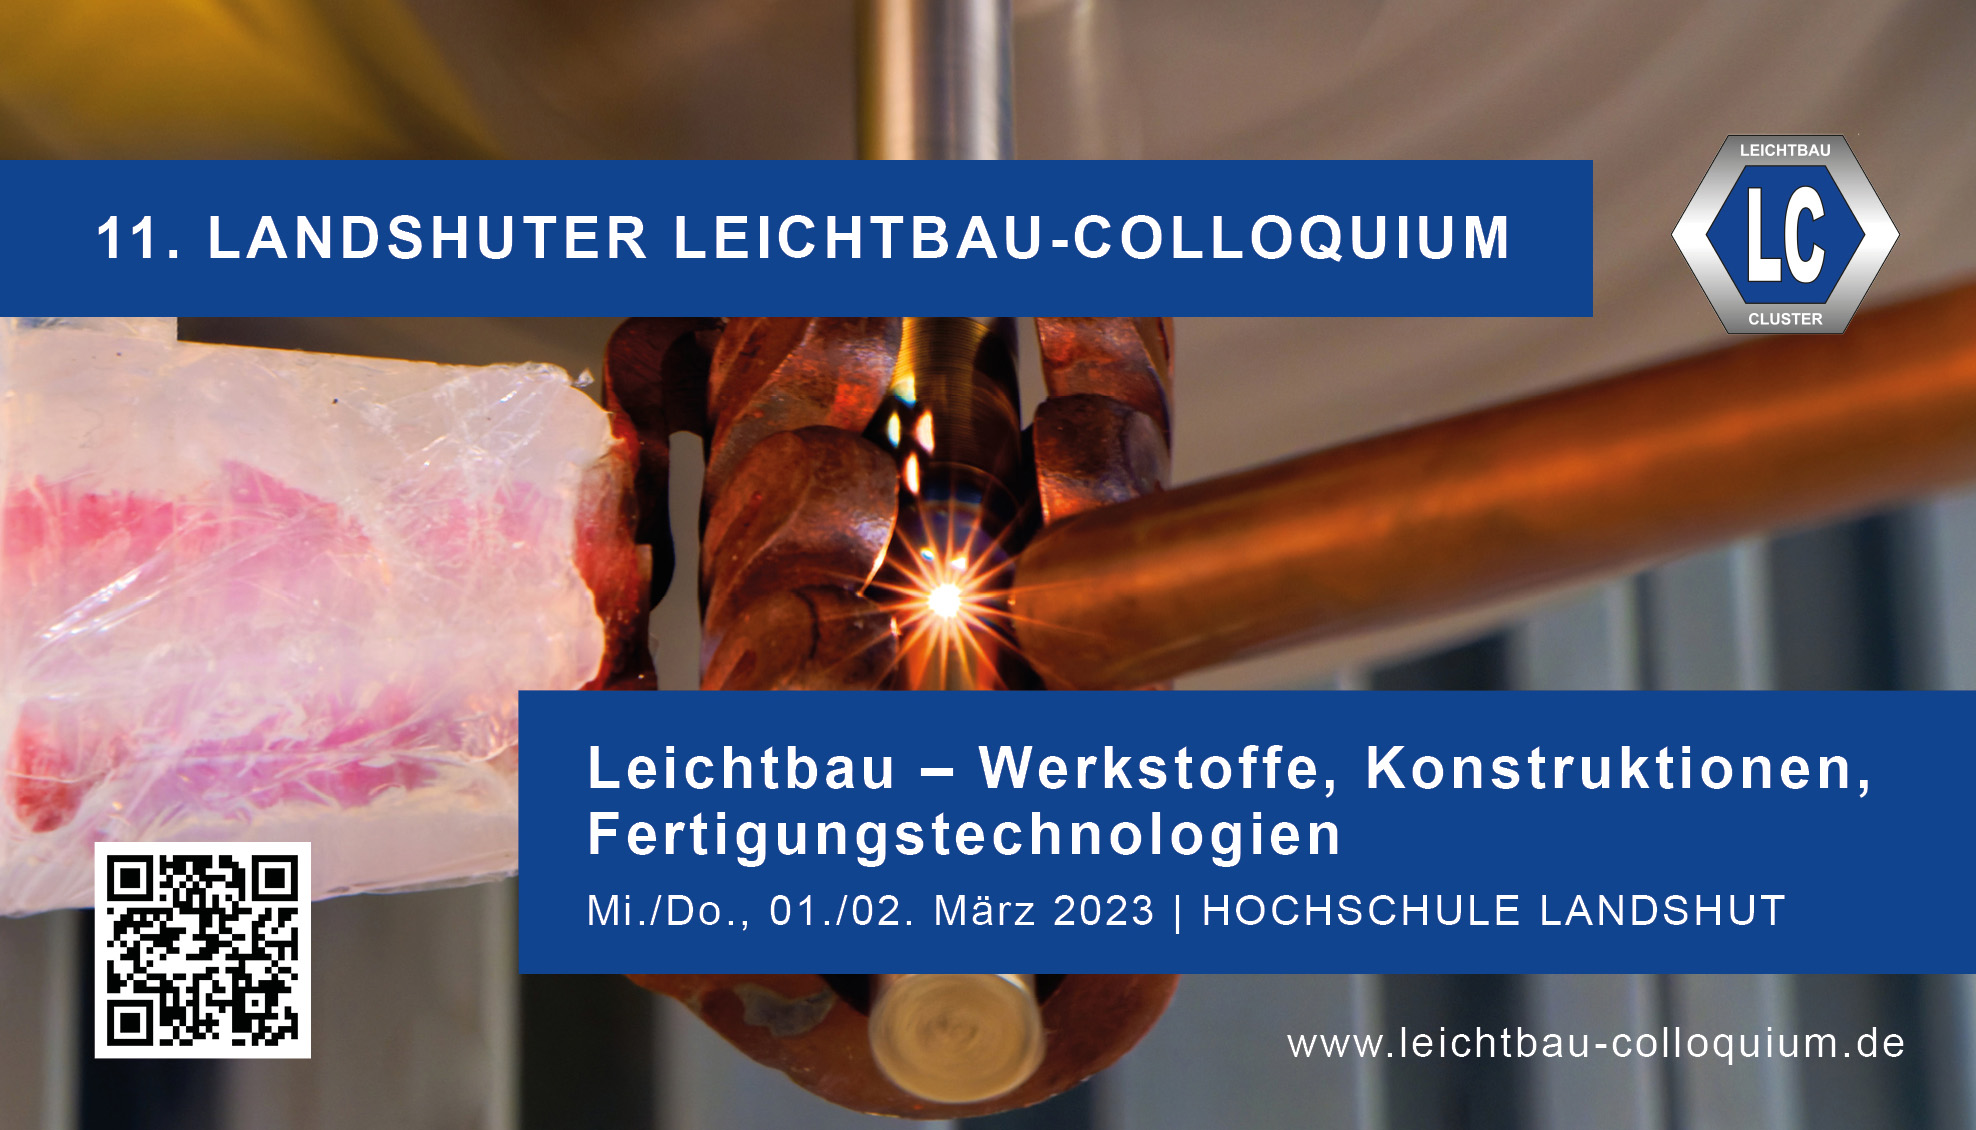 © Hochschule Landshut